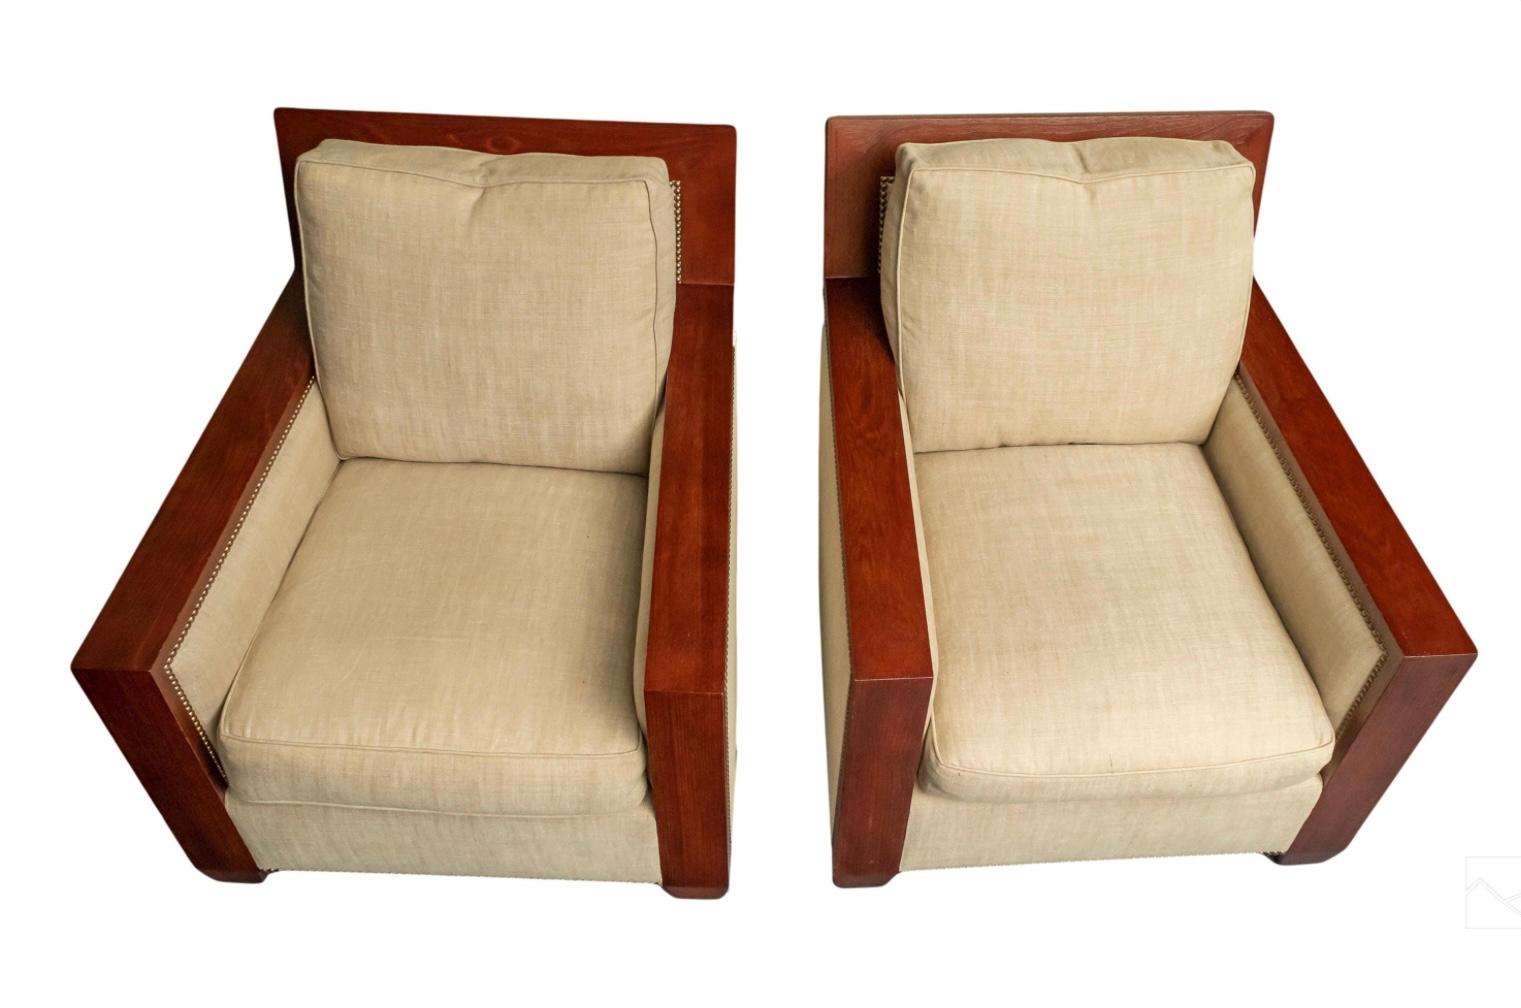 Exquise paire de fauteuils design conçus par John Hutton (1947-2006) pour la Collection Sutherland (Dallas). Chaises de salon d'inspiration Art Déco Moderne, fabriquées avec des cadres en bois de finition foncée et équipées d'assises et de coussins